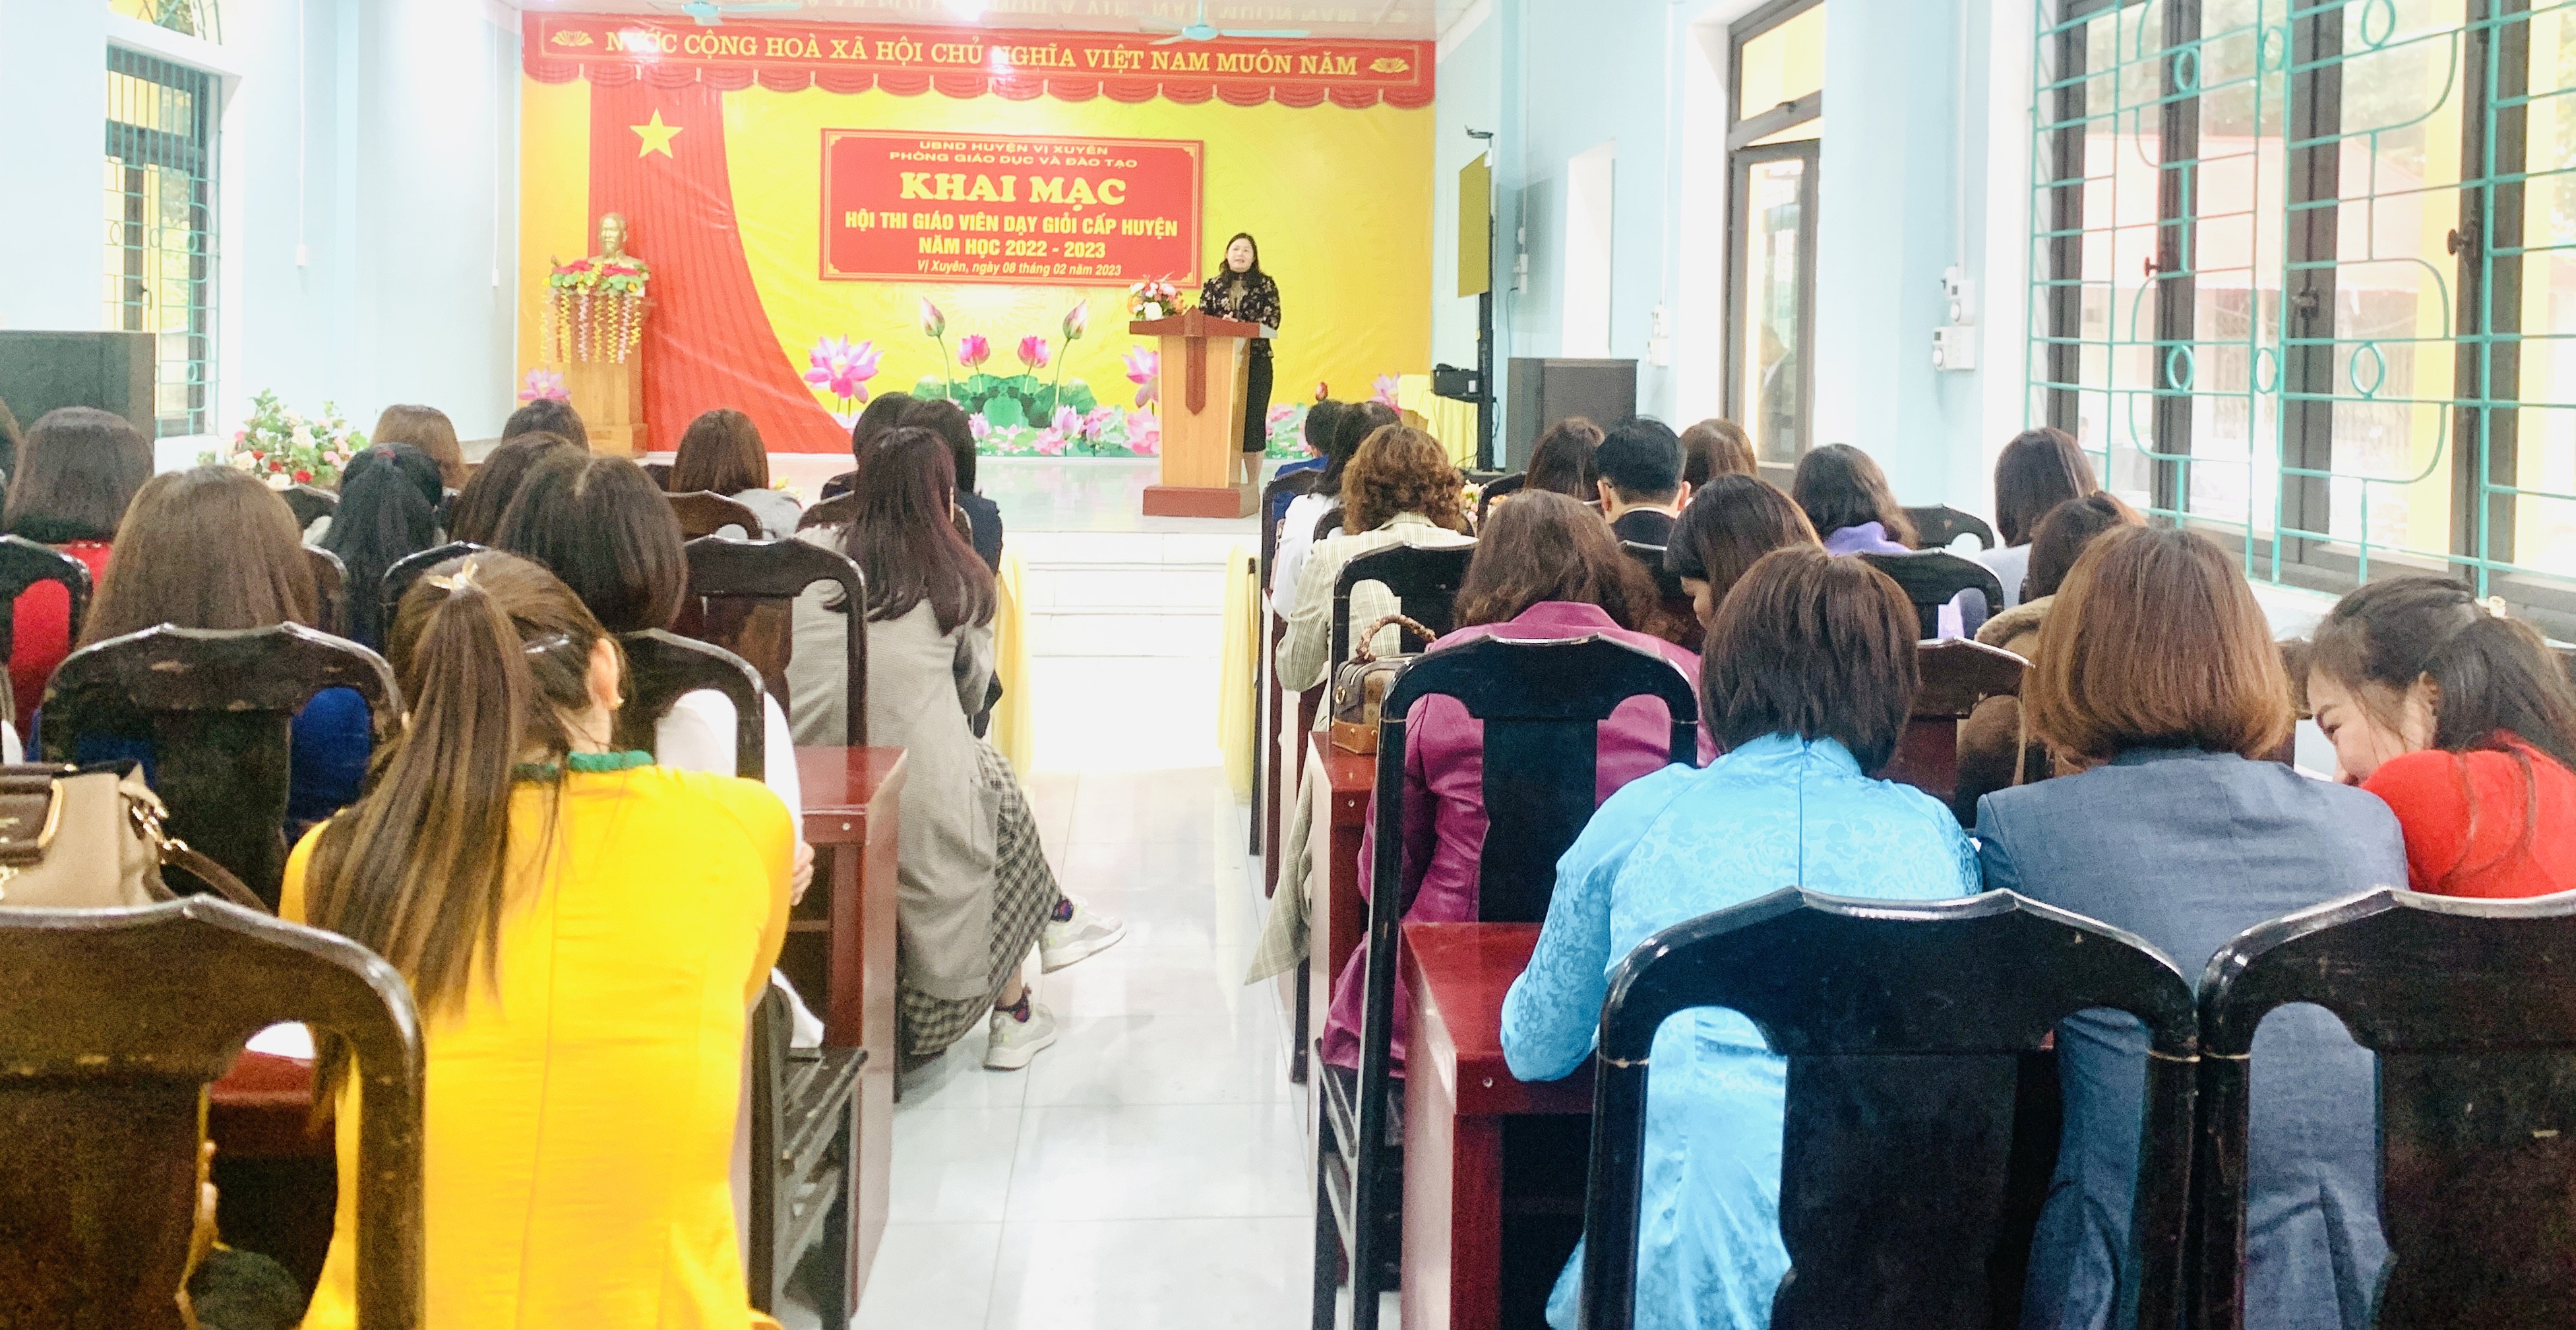 Vị Xuyên khai mạc hội thi giáo viên dạy giỏi cấp huyện